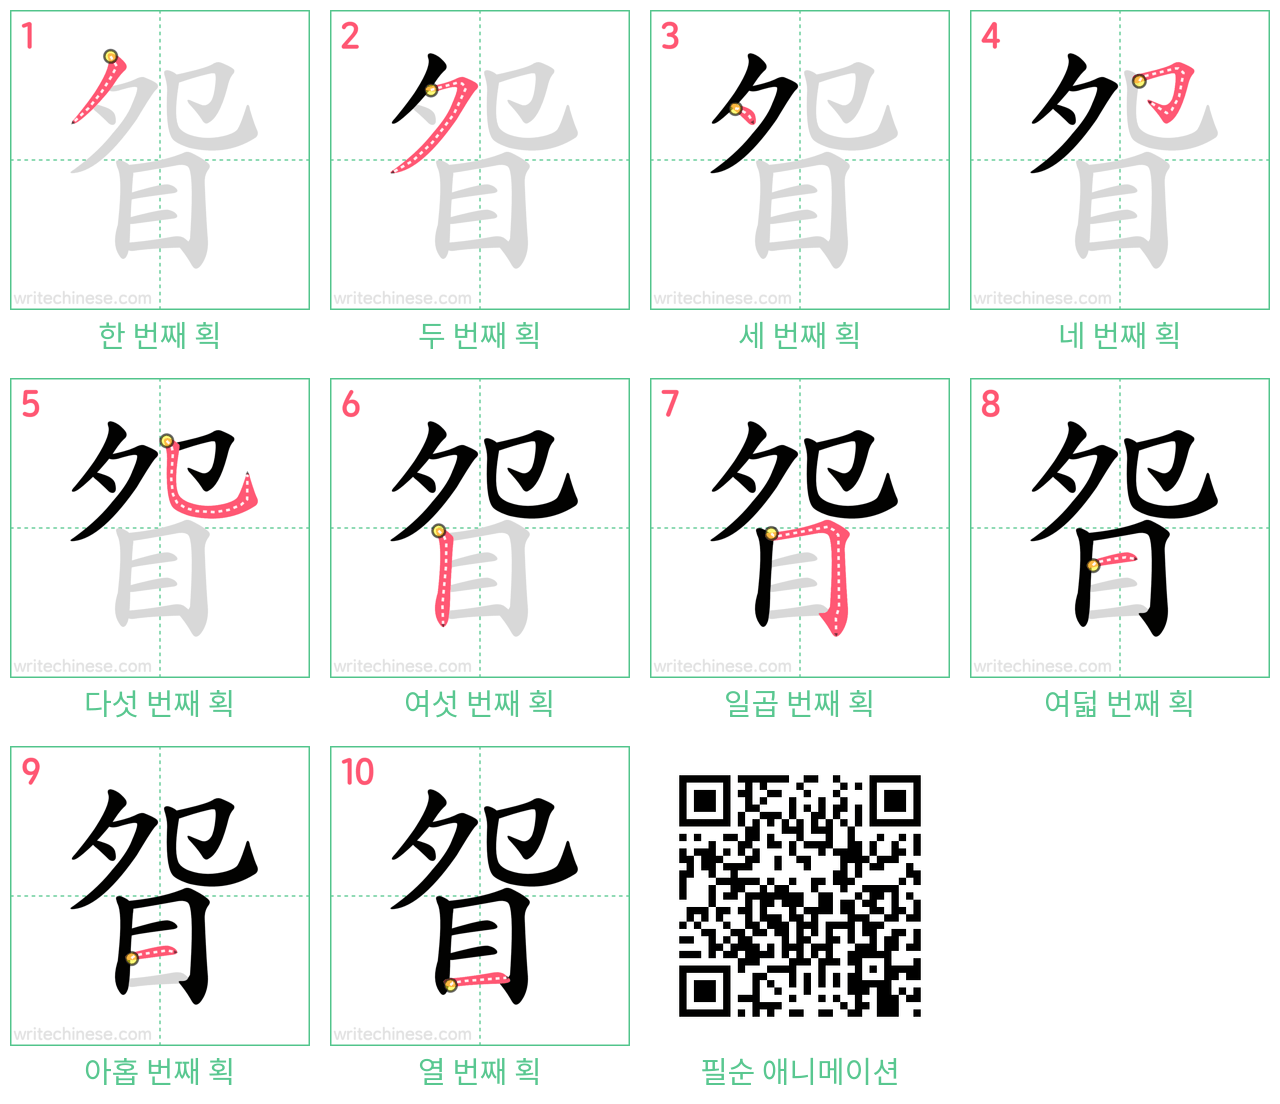 眢 step-by-step stroke order diagrams